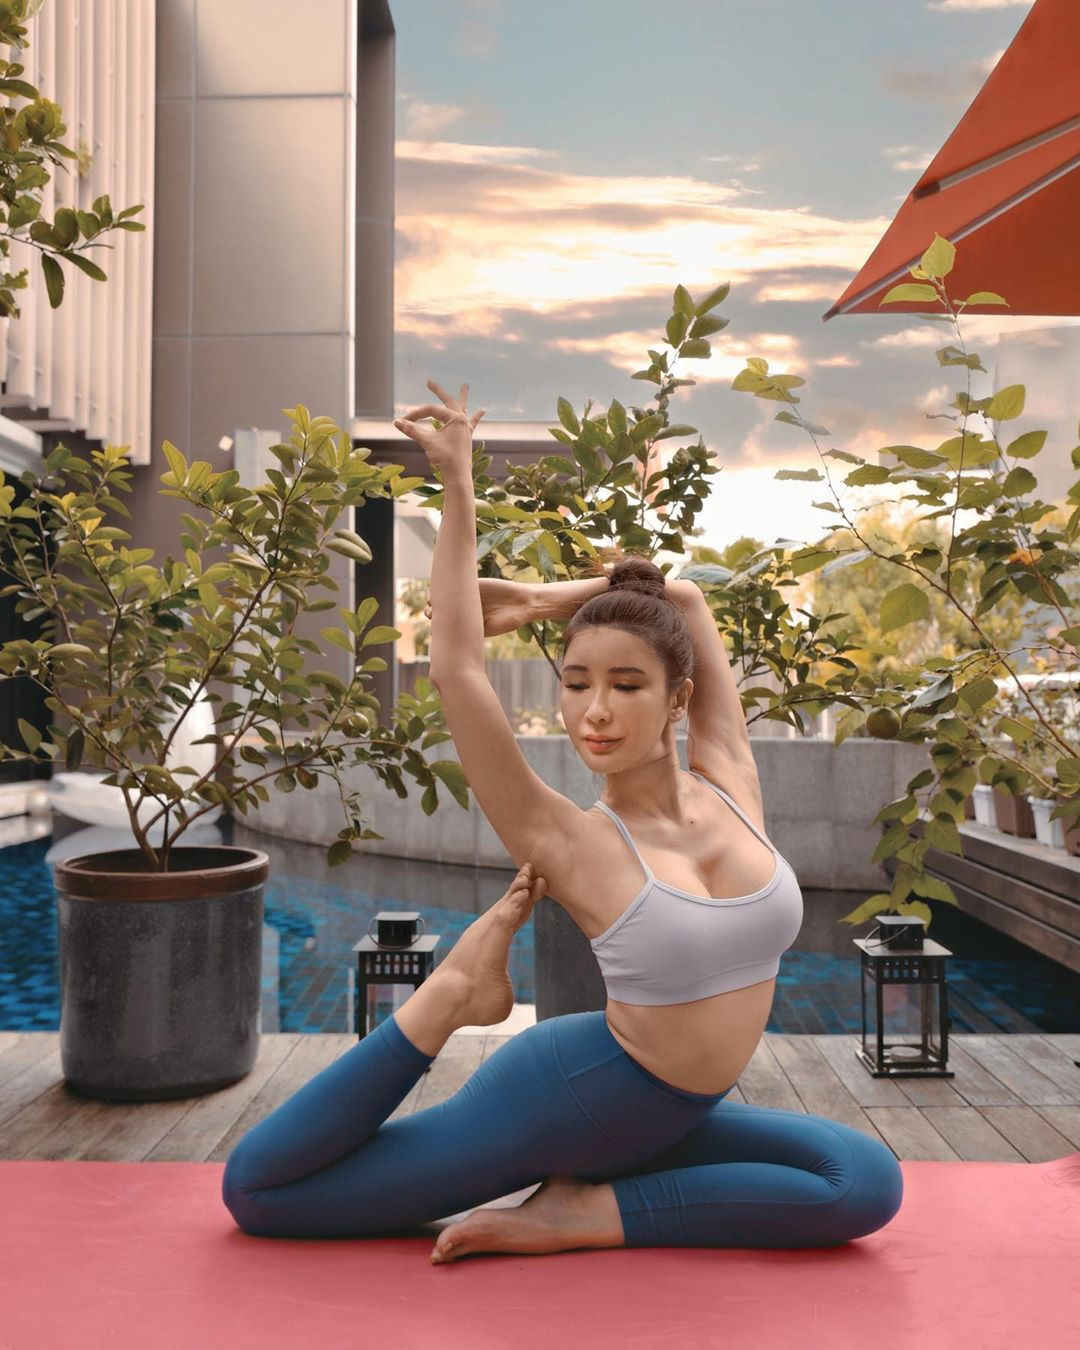 Hiện tại, Jamie Chua tích cực đăng tải các video về cuộc sống thường nhật như làm vườn, cắm hoa và tập Yoga.